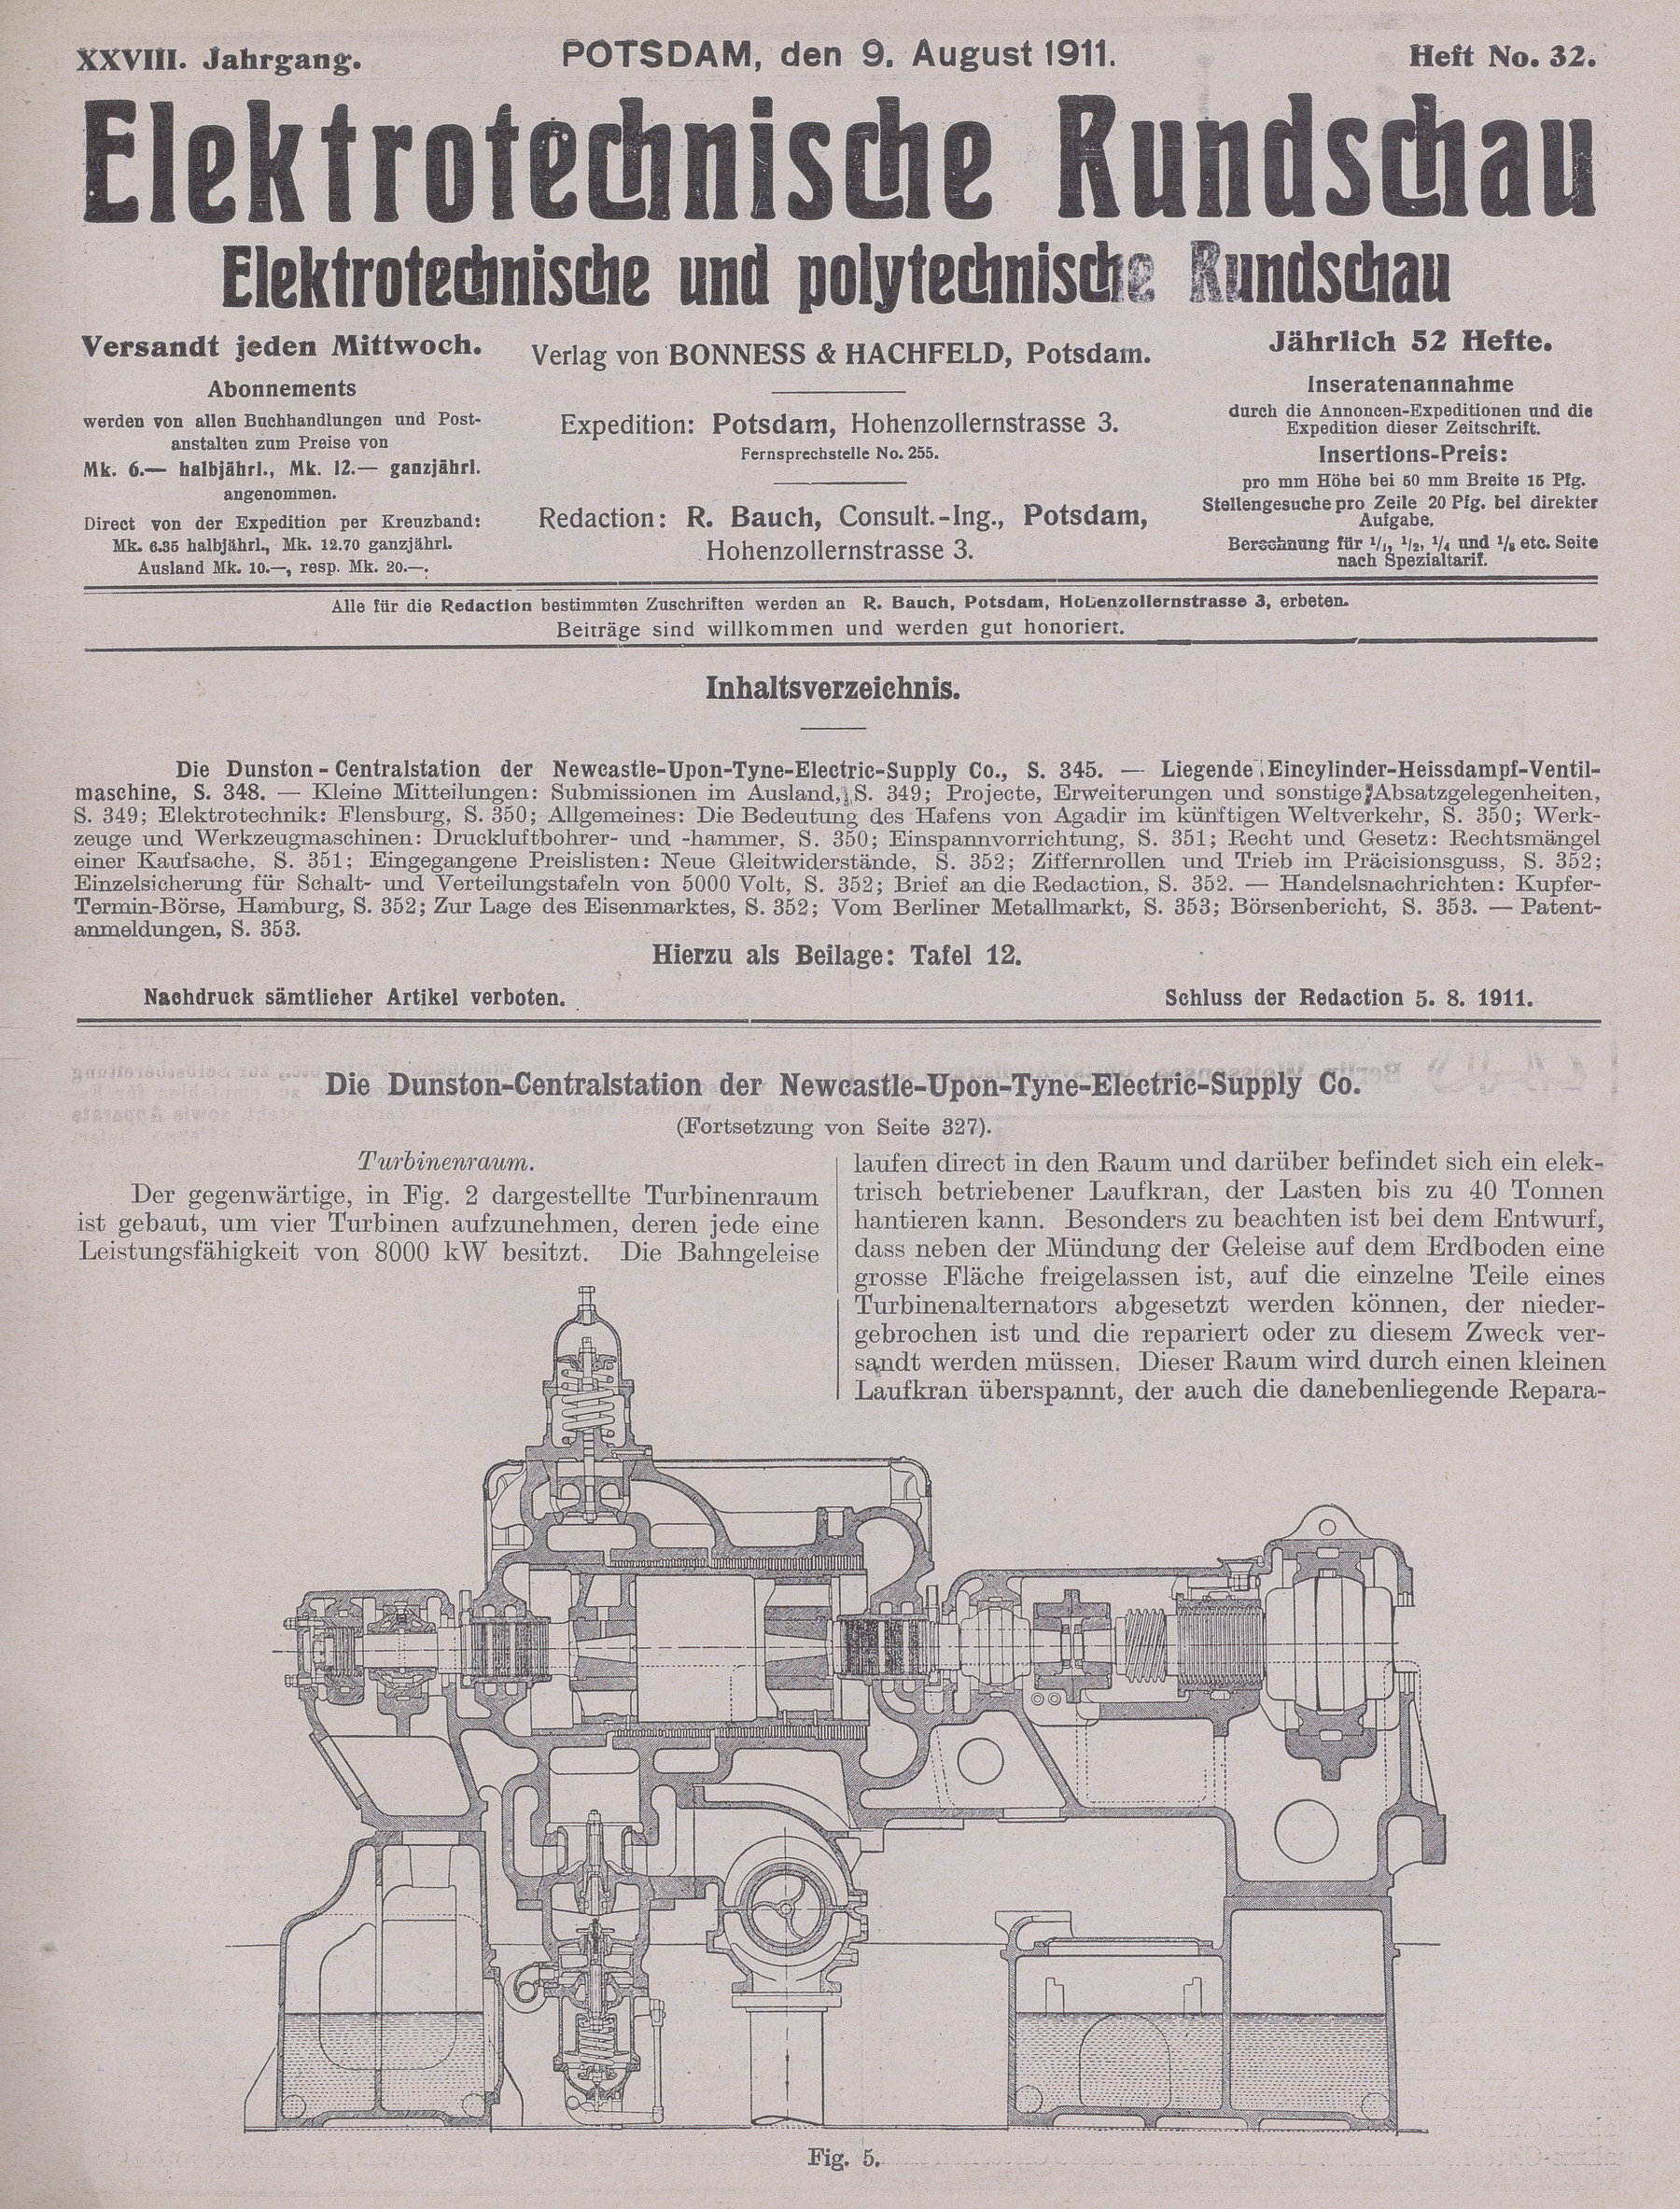 Elektrotechnische Rundschau : Elektrotechnische und polytechnische Rundschau, XXVIII. Jahrgang, Heft No. 32